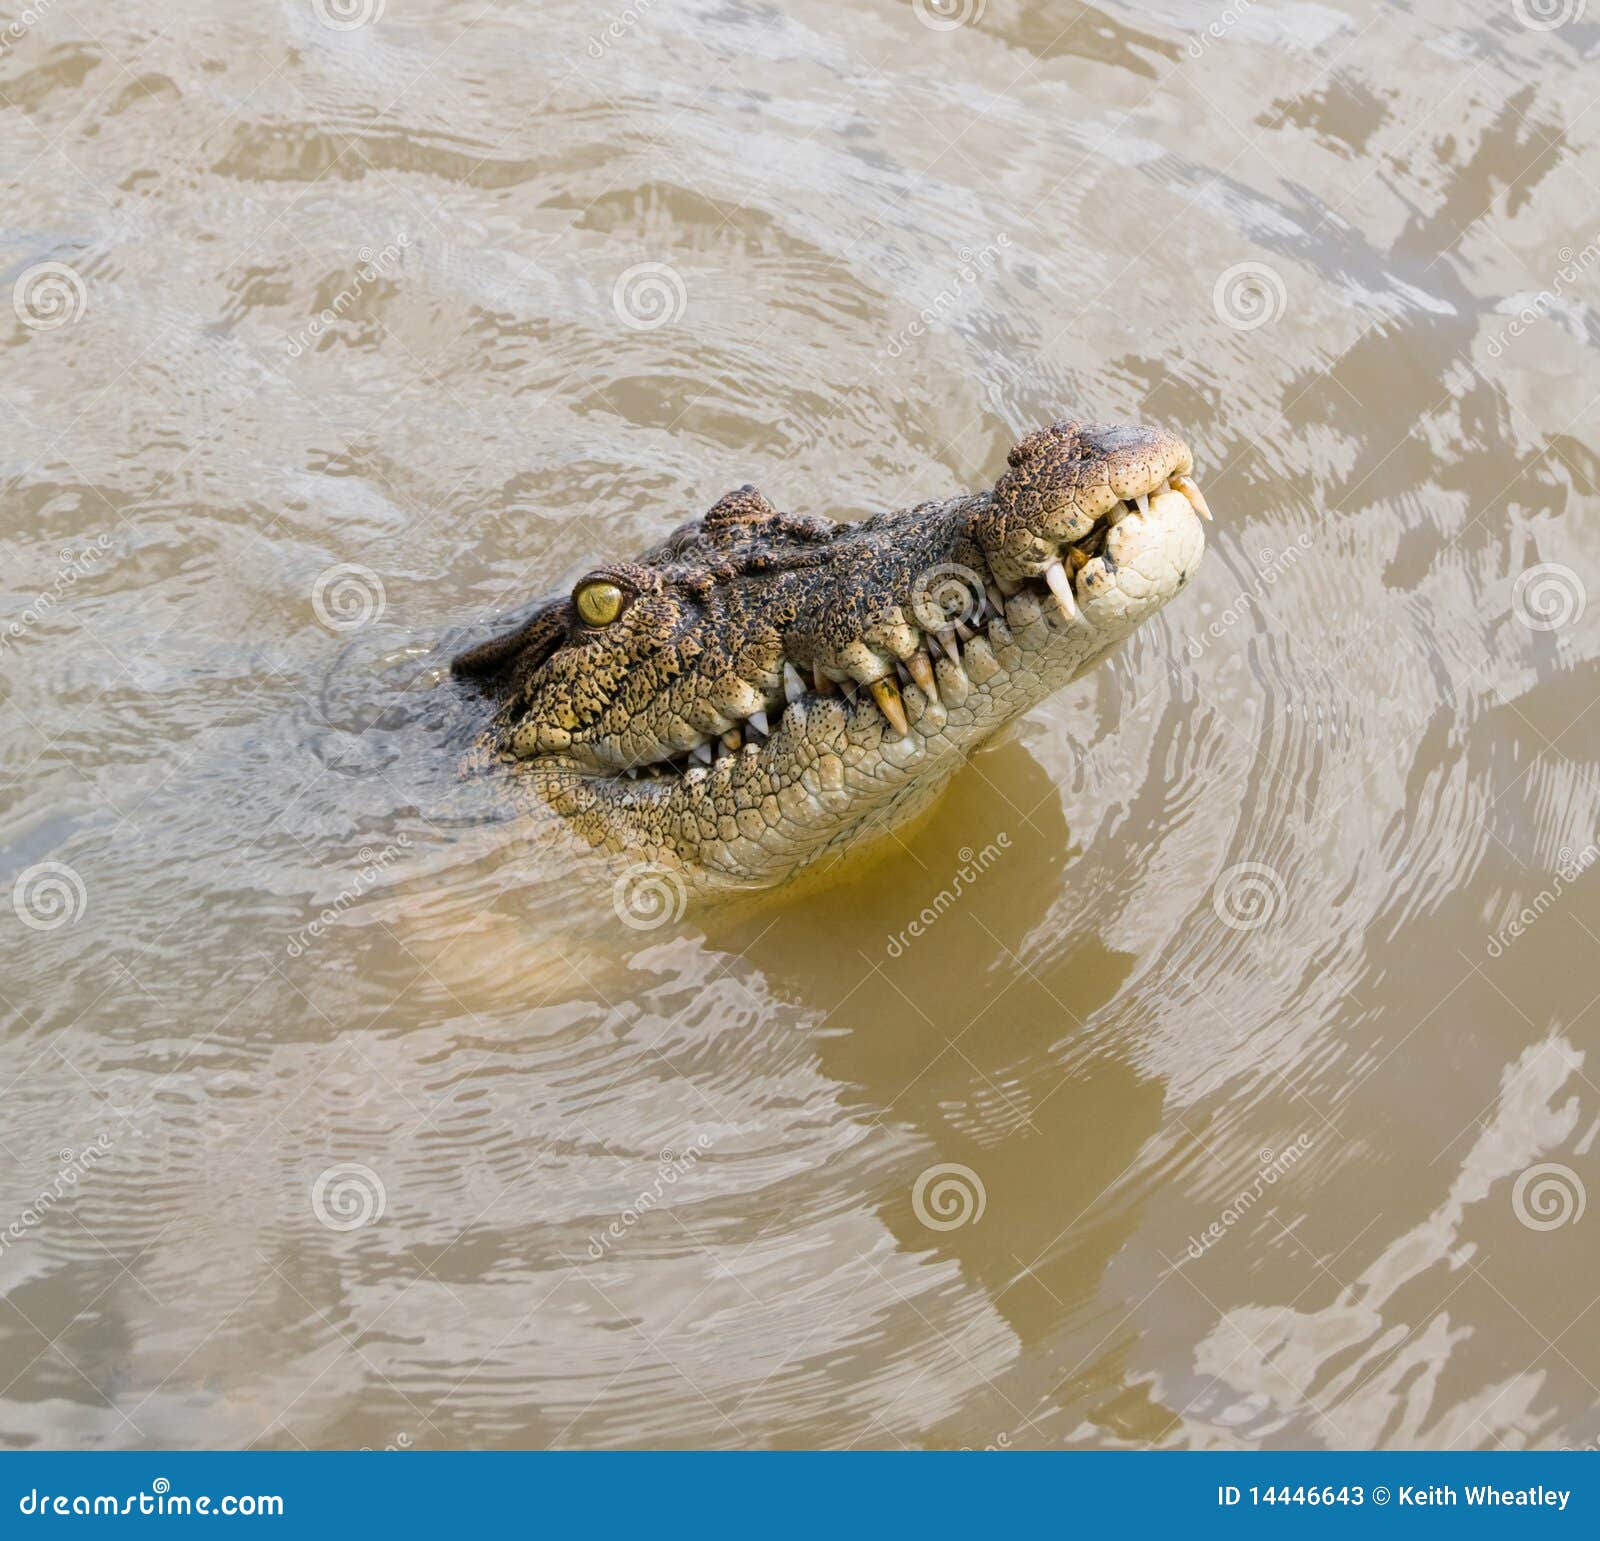 Крокодилы в соленой воде. Голова крокодила из воды. Голова крокодила в воде. Голов крокодила в воде. Крокодил в воде.